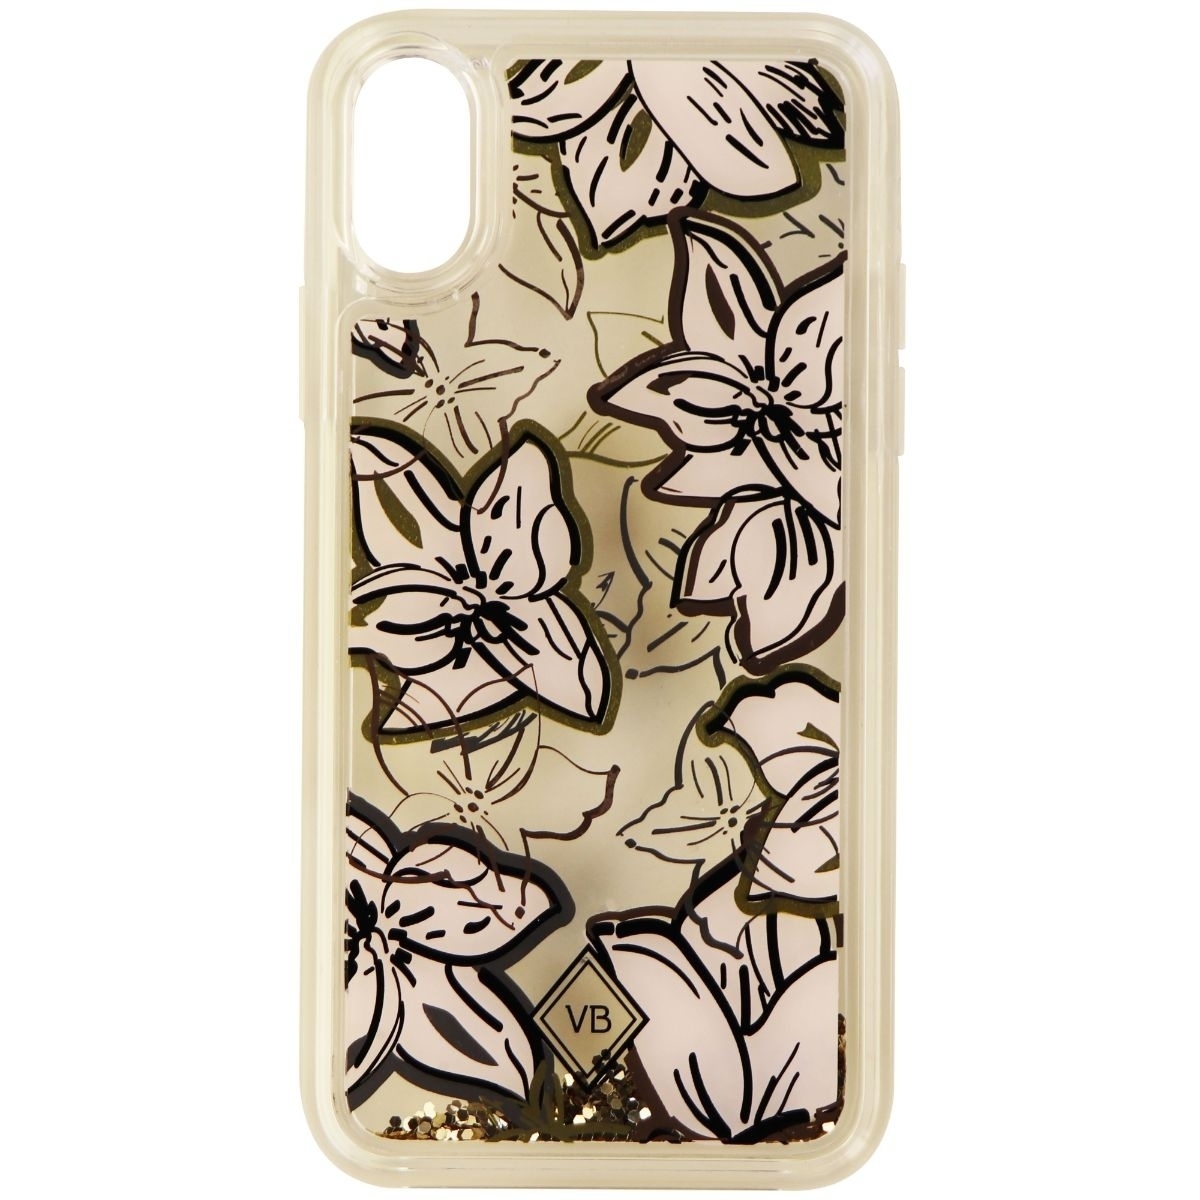 Vera Bradley Glitter Flurry Case For Apple IPhone X - White Flowers/Gold Glitter